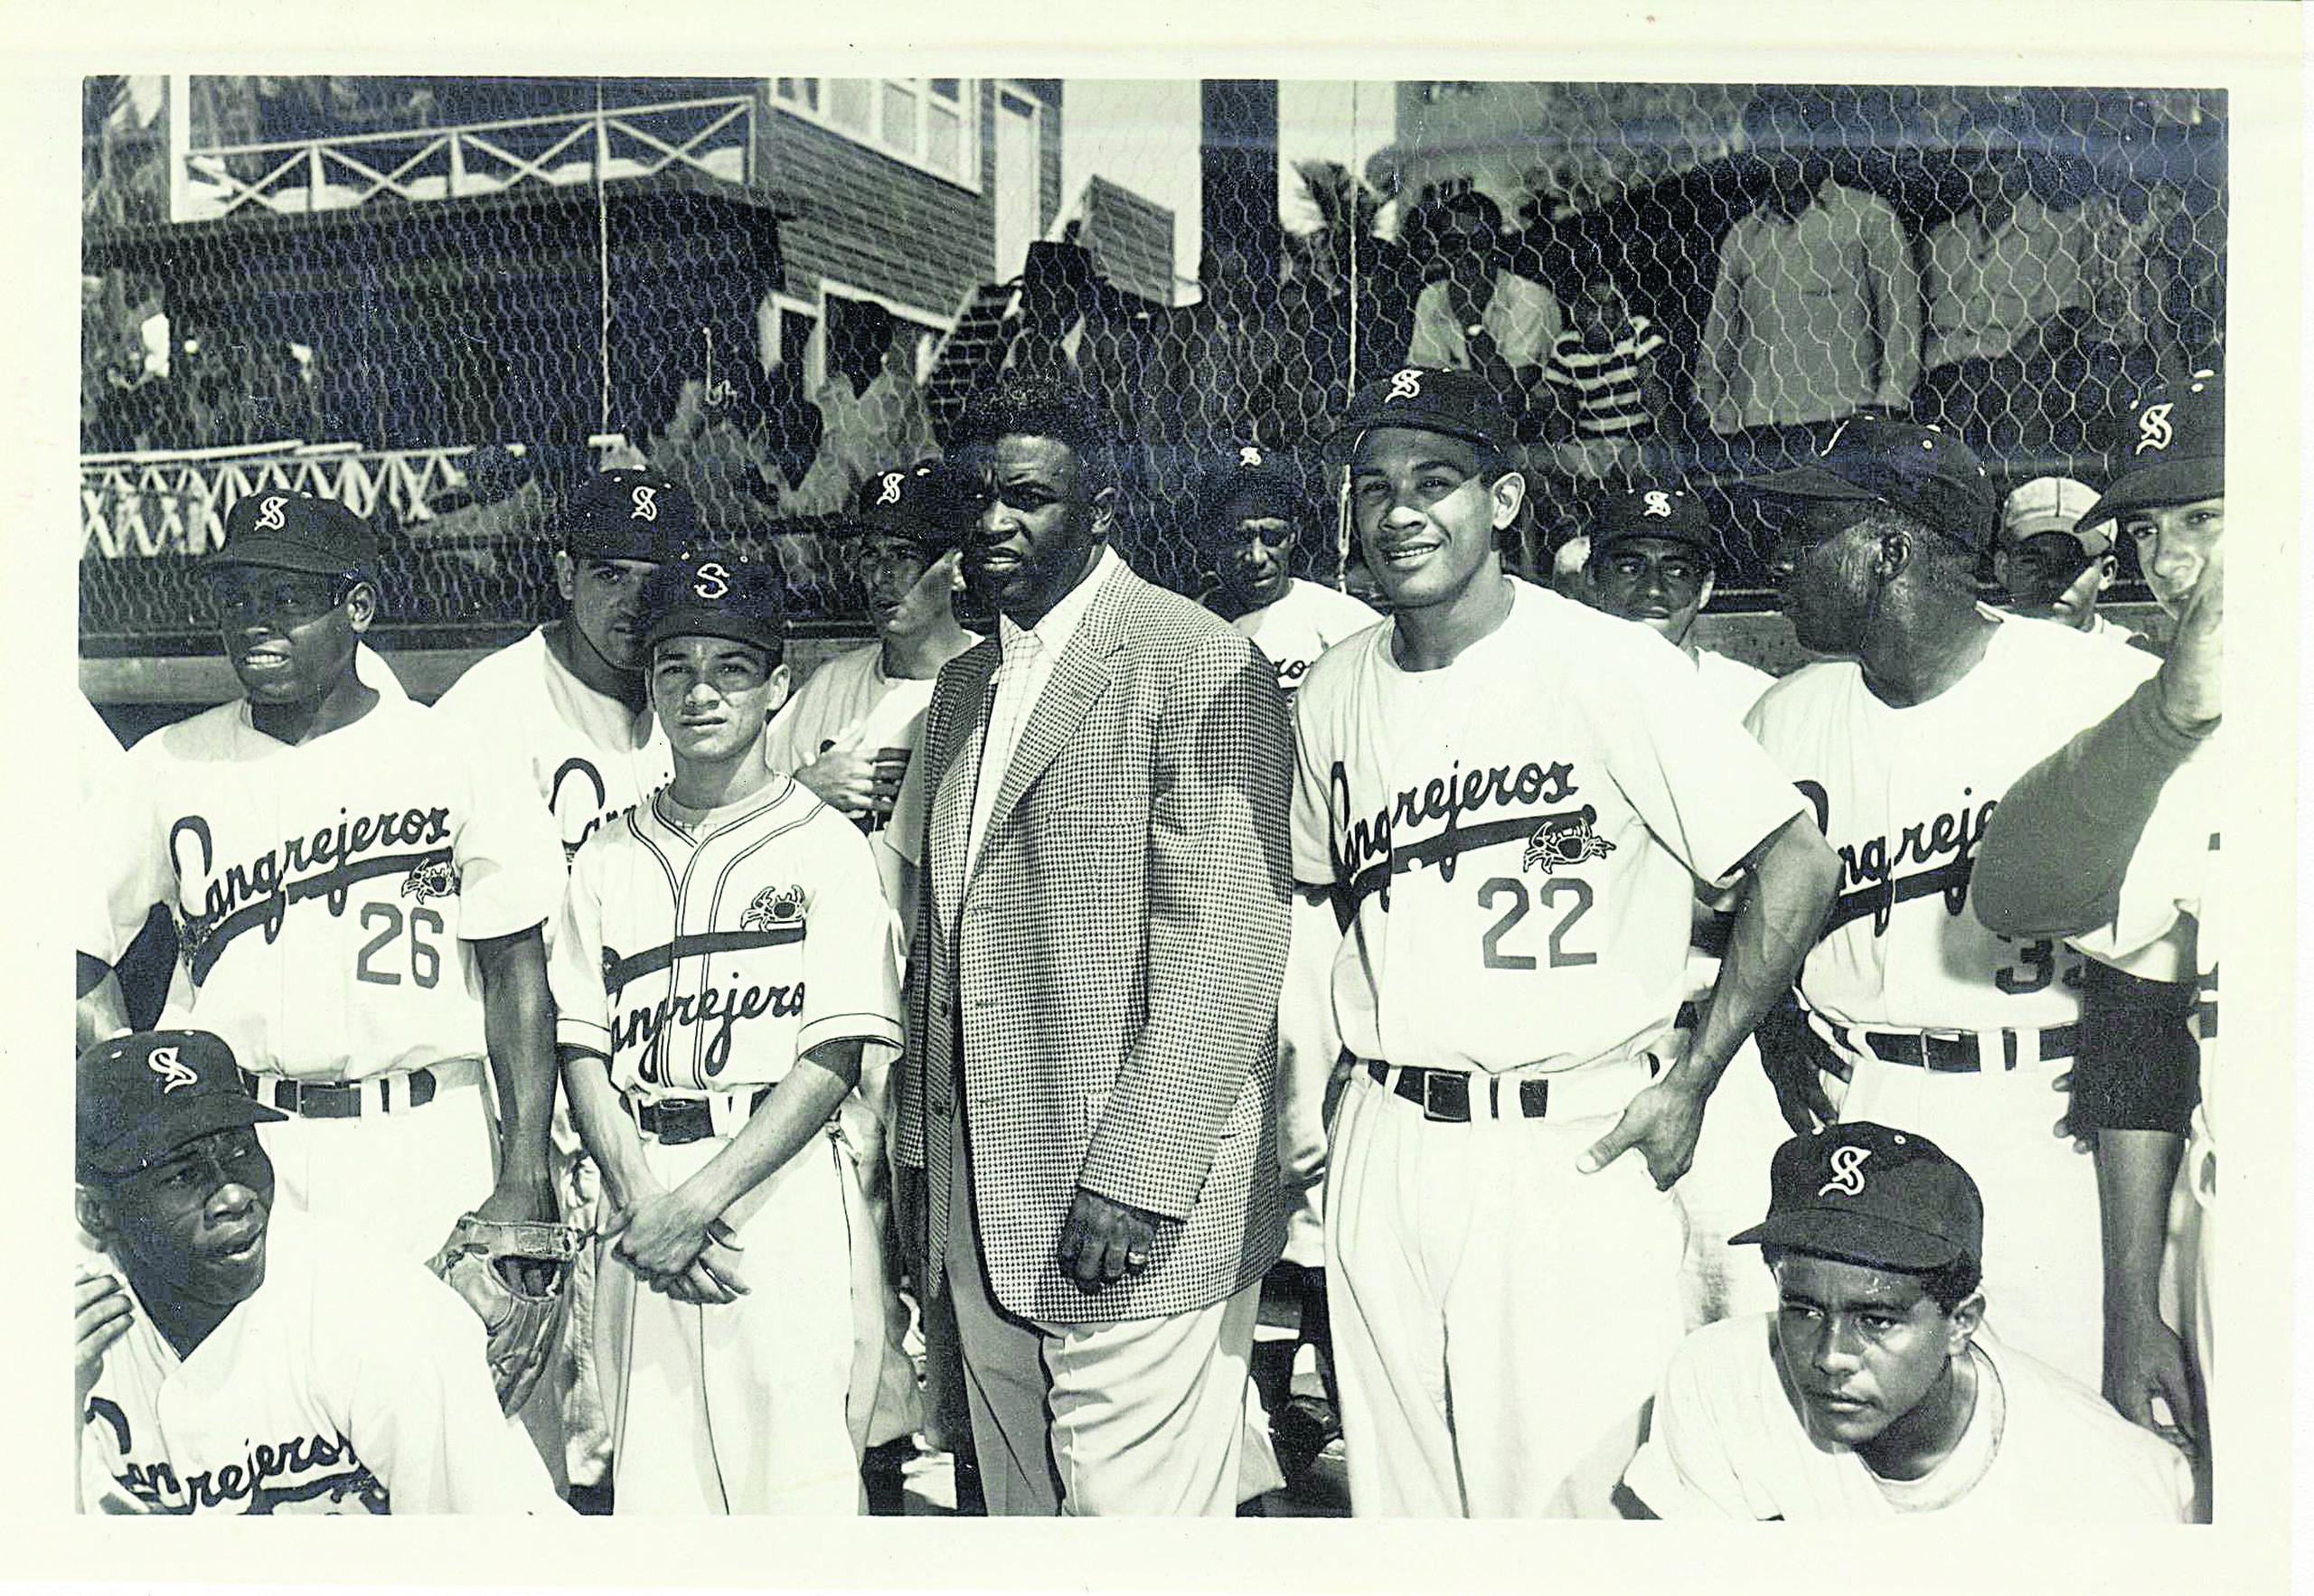 El 15 de abril del 1947, Jackie Robinson, aquí en chaqueta junto al boricua Rubén Gómez (22), se convirtió en el primer afroamericano en jugar en las Grandes Ligas.